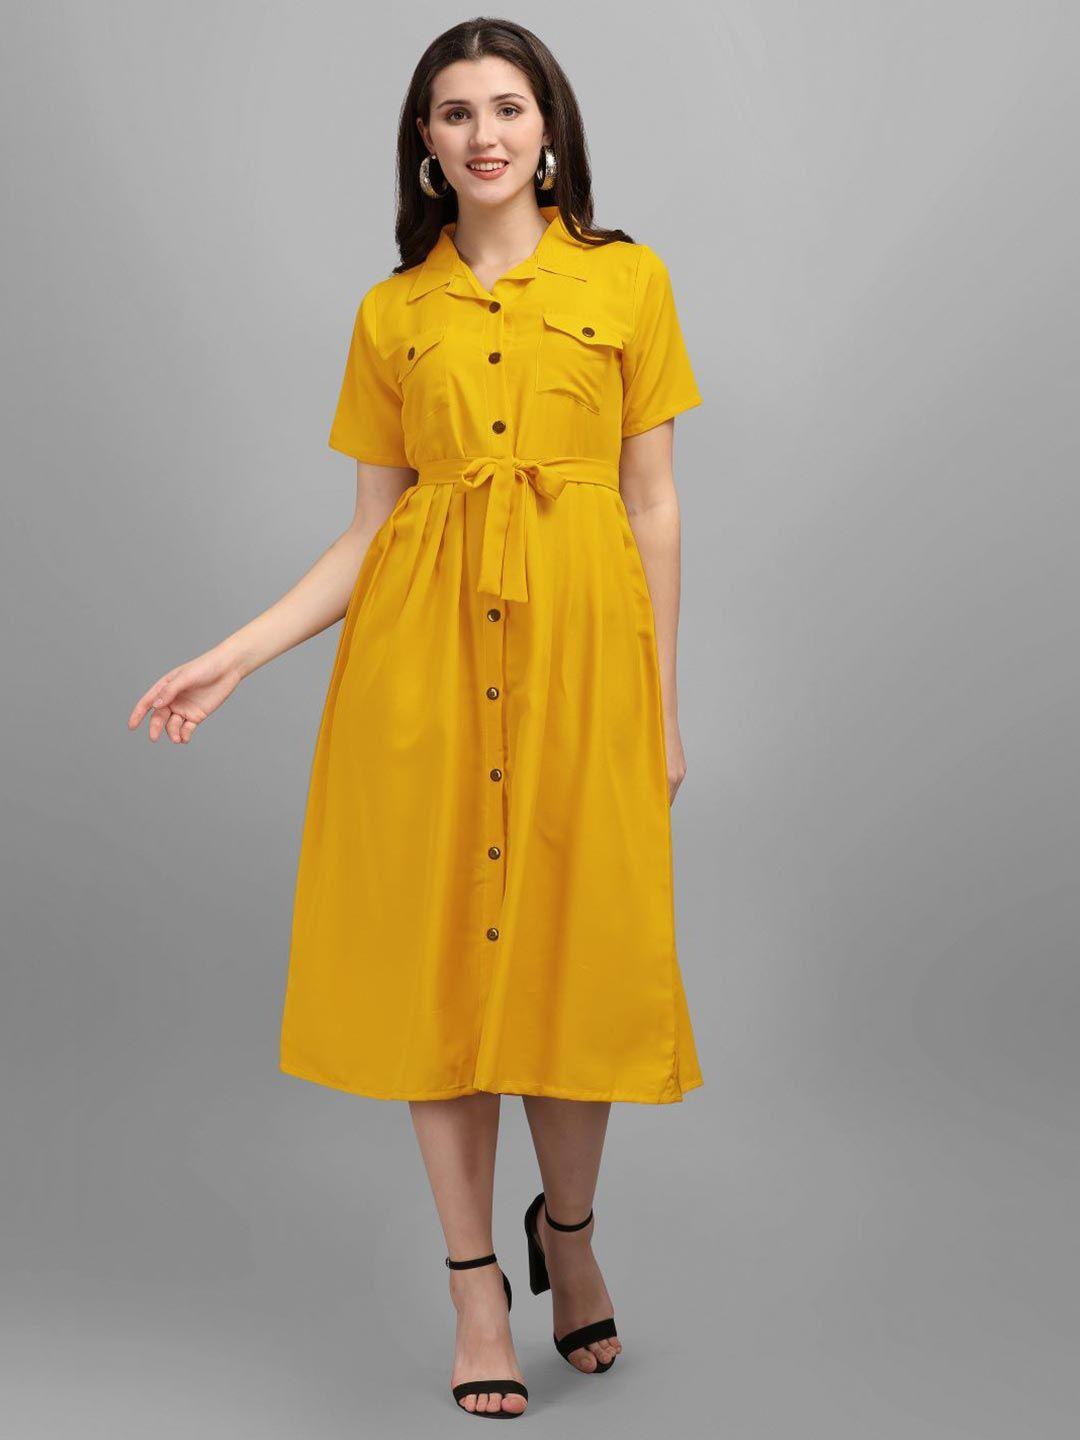 gufrina yellow shirt dress